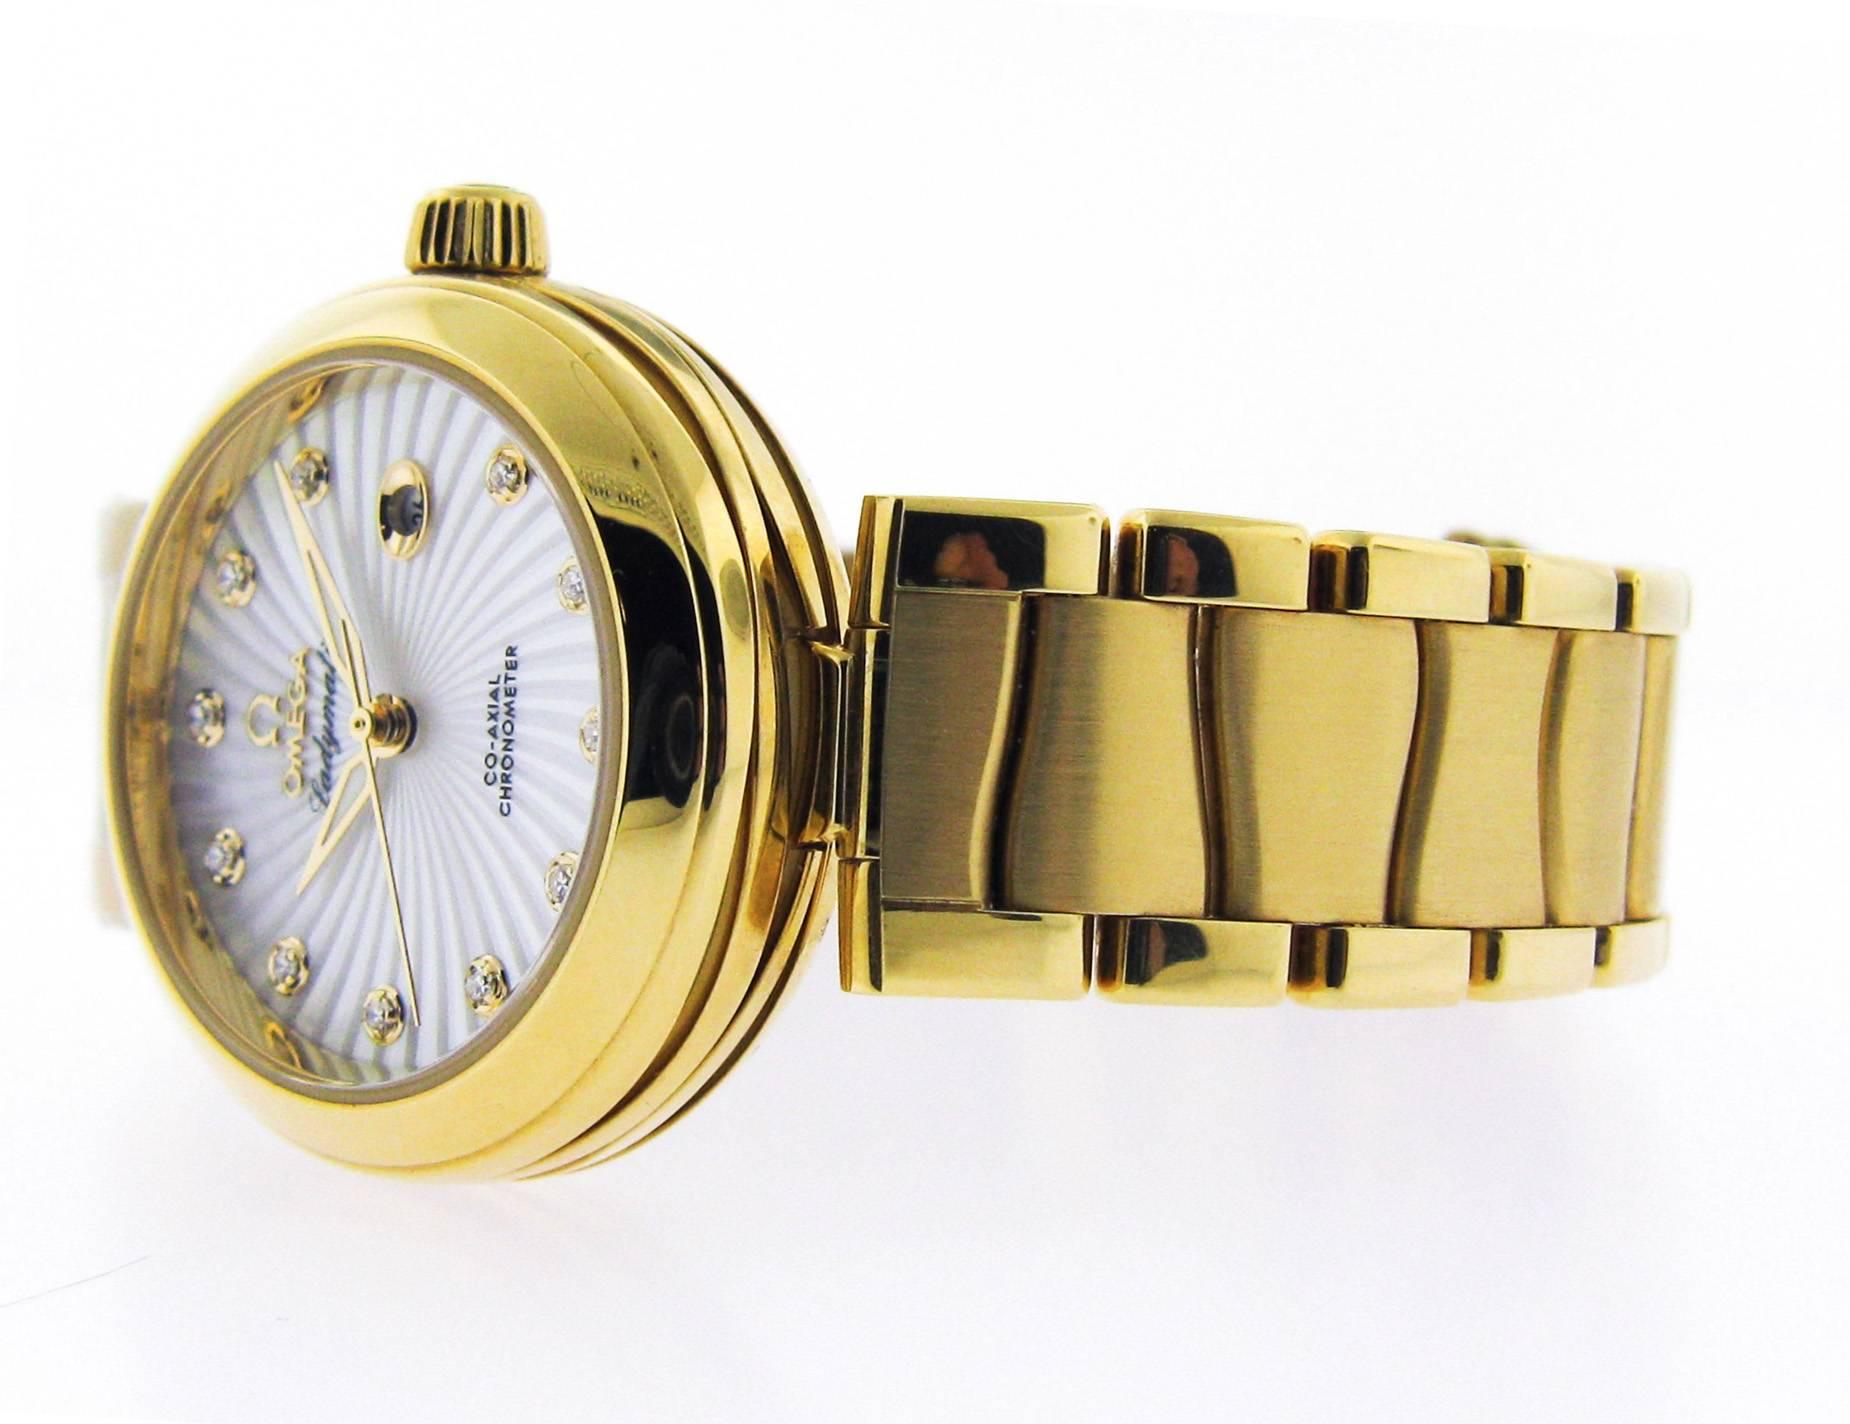 La montre-bracelet Omega Ladymatic a défini la grâce et l'élégance féminines.
Le boîtier et le bracelet de 34 mm sont en or jaune 18K. Le boîtier intemporel est complété par un cadran captivant. Le visage de ce garde-temps présente le motif